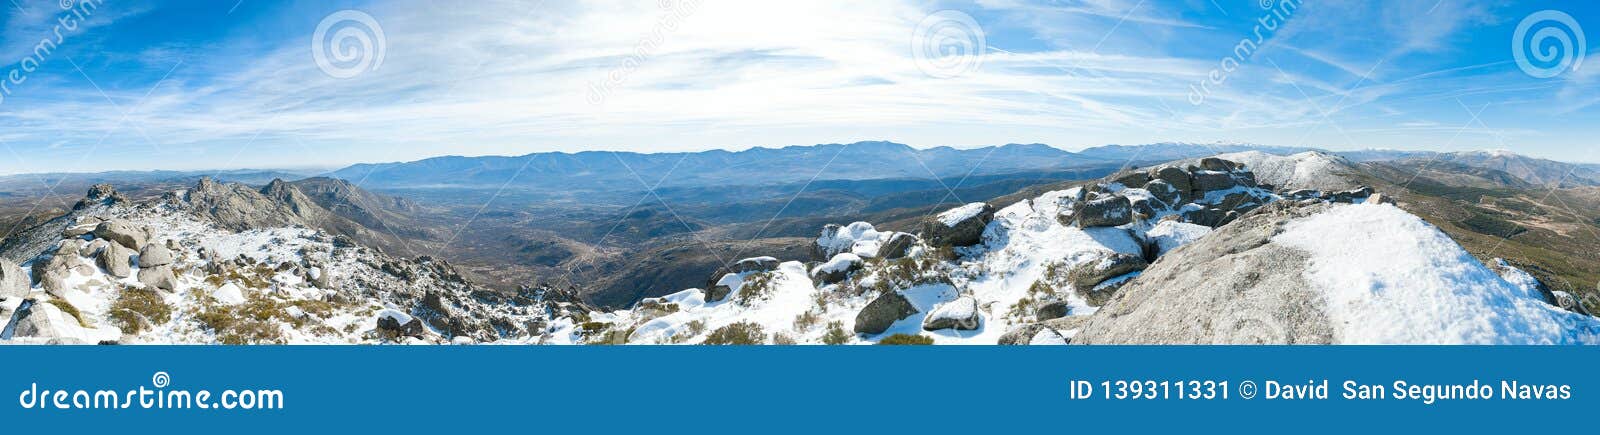 panoramica de la sierra de avila, llamado pico zapatero y de fondo la sierra de guadarrama, madrid